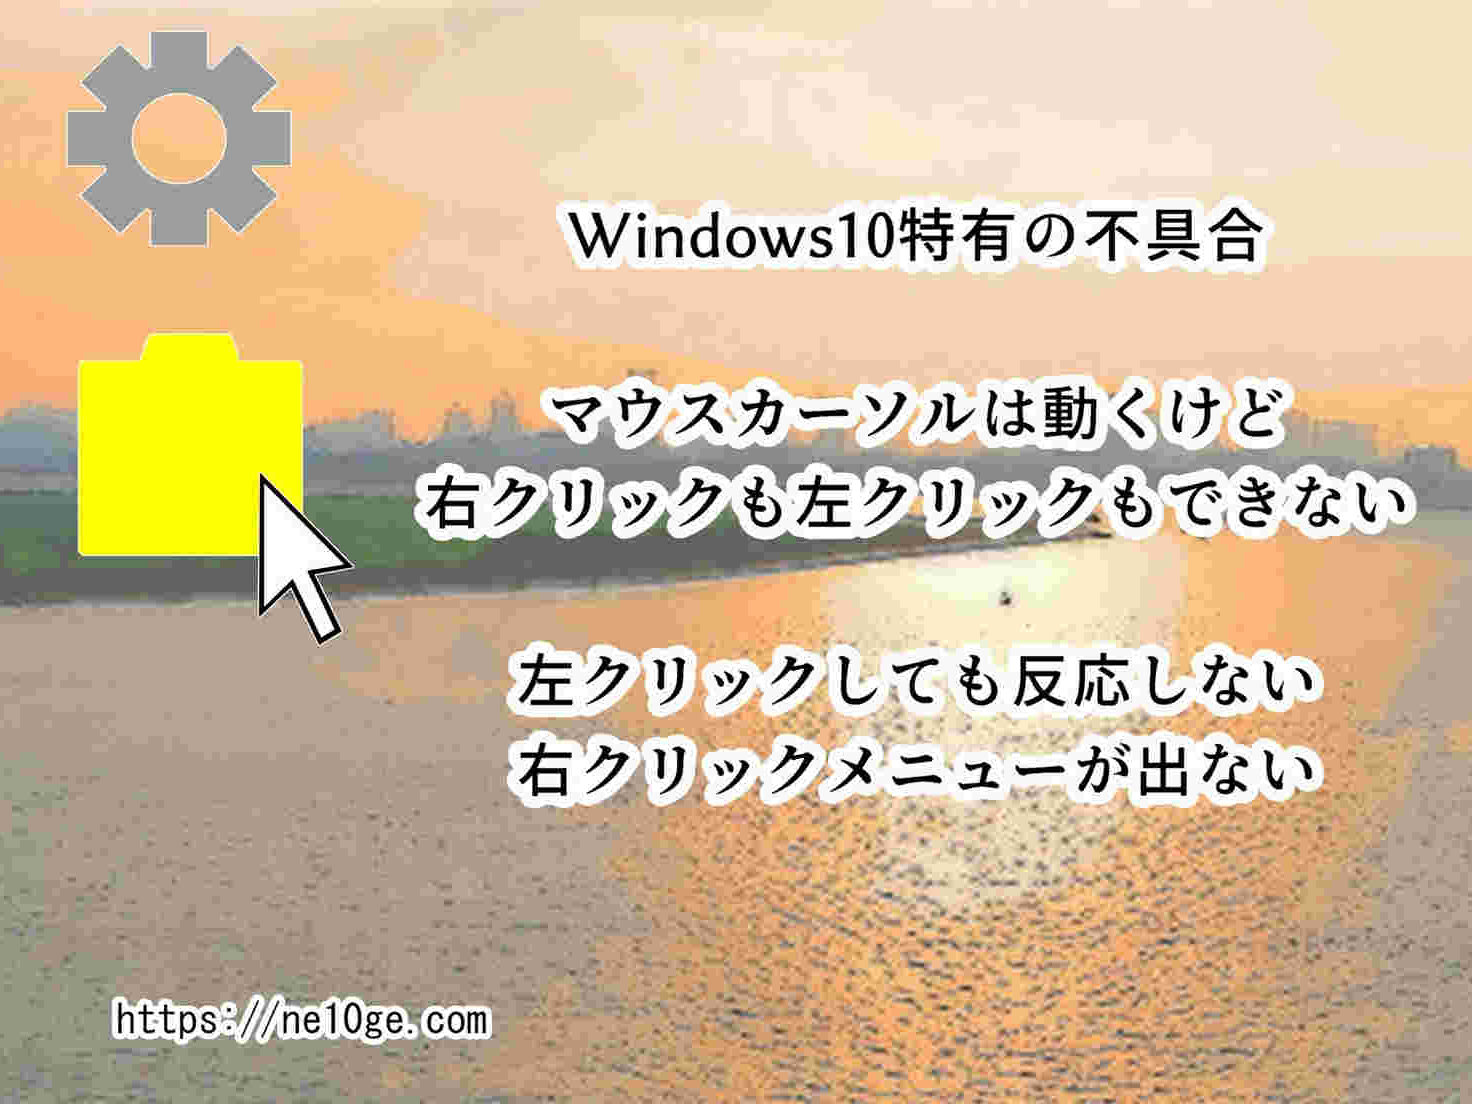 Windows10特有の不具合、マウスカーソルは動くけどクリックできない、右クリックも左クリックも効かない時の根本的な解決方法